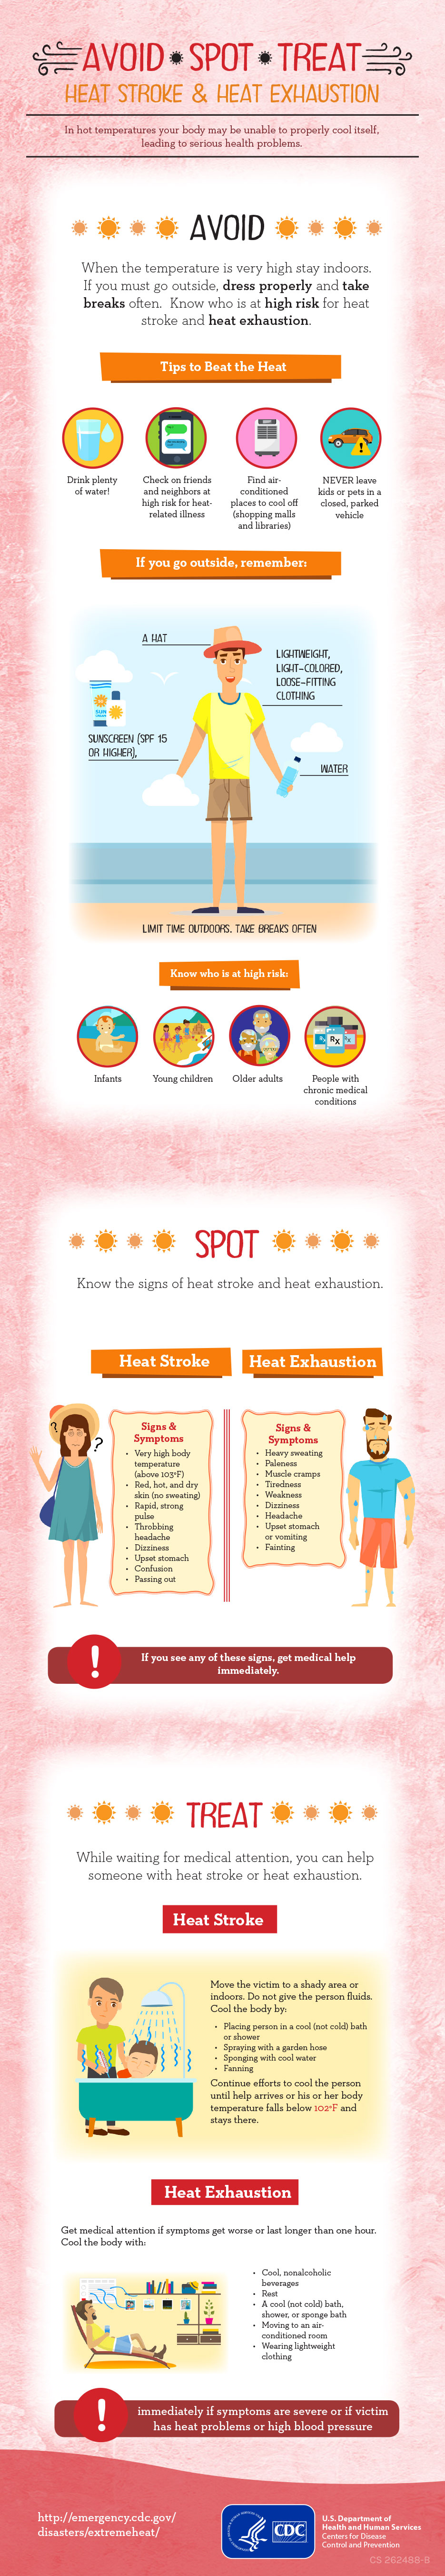 Avoid. Spot. Treat : heat stroke & heat exhaustion